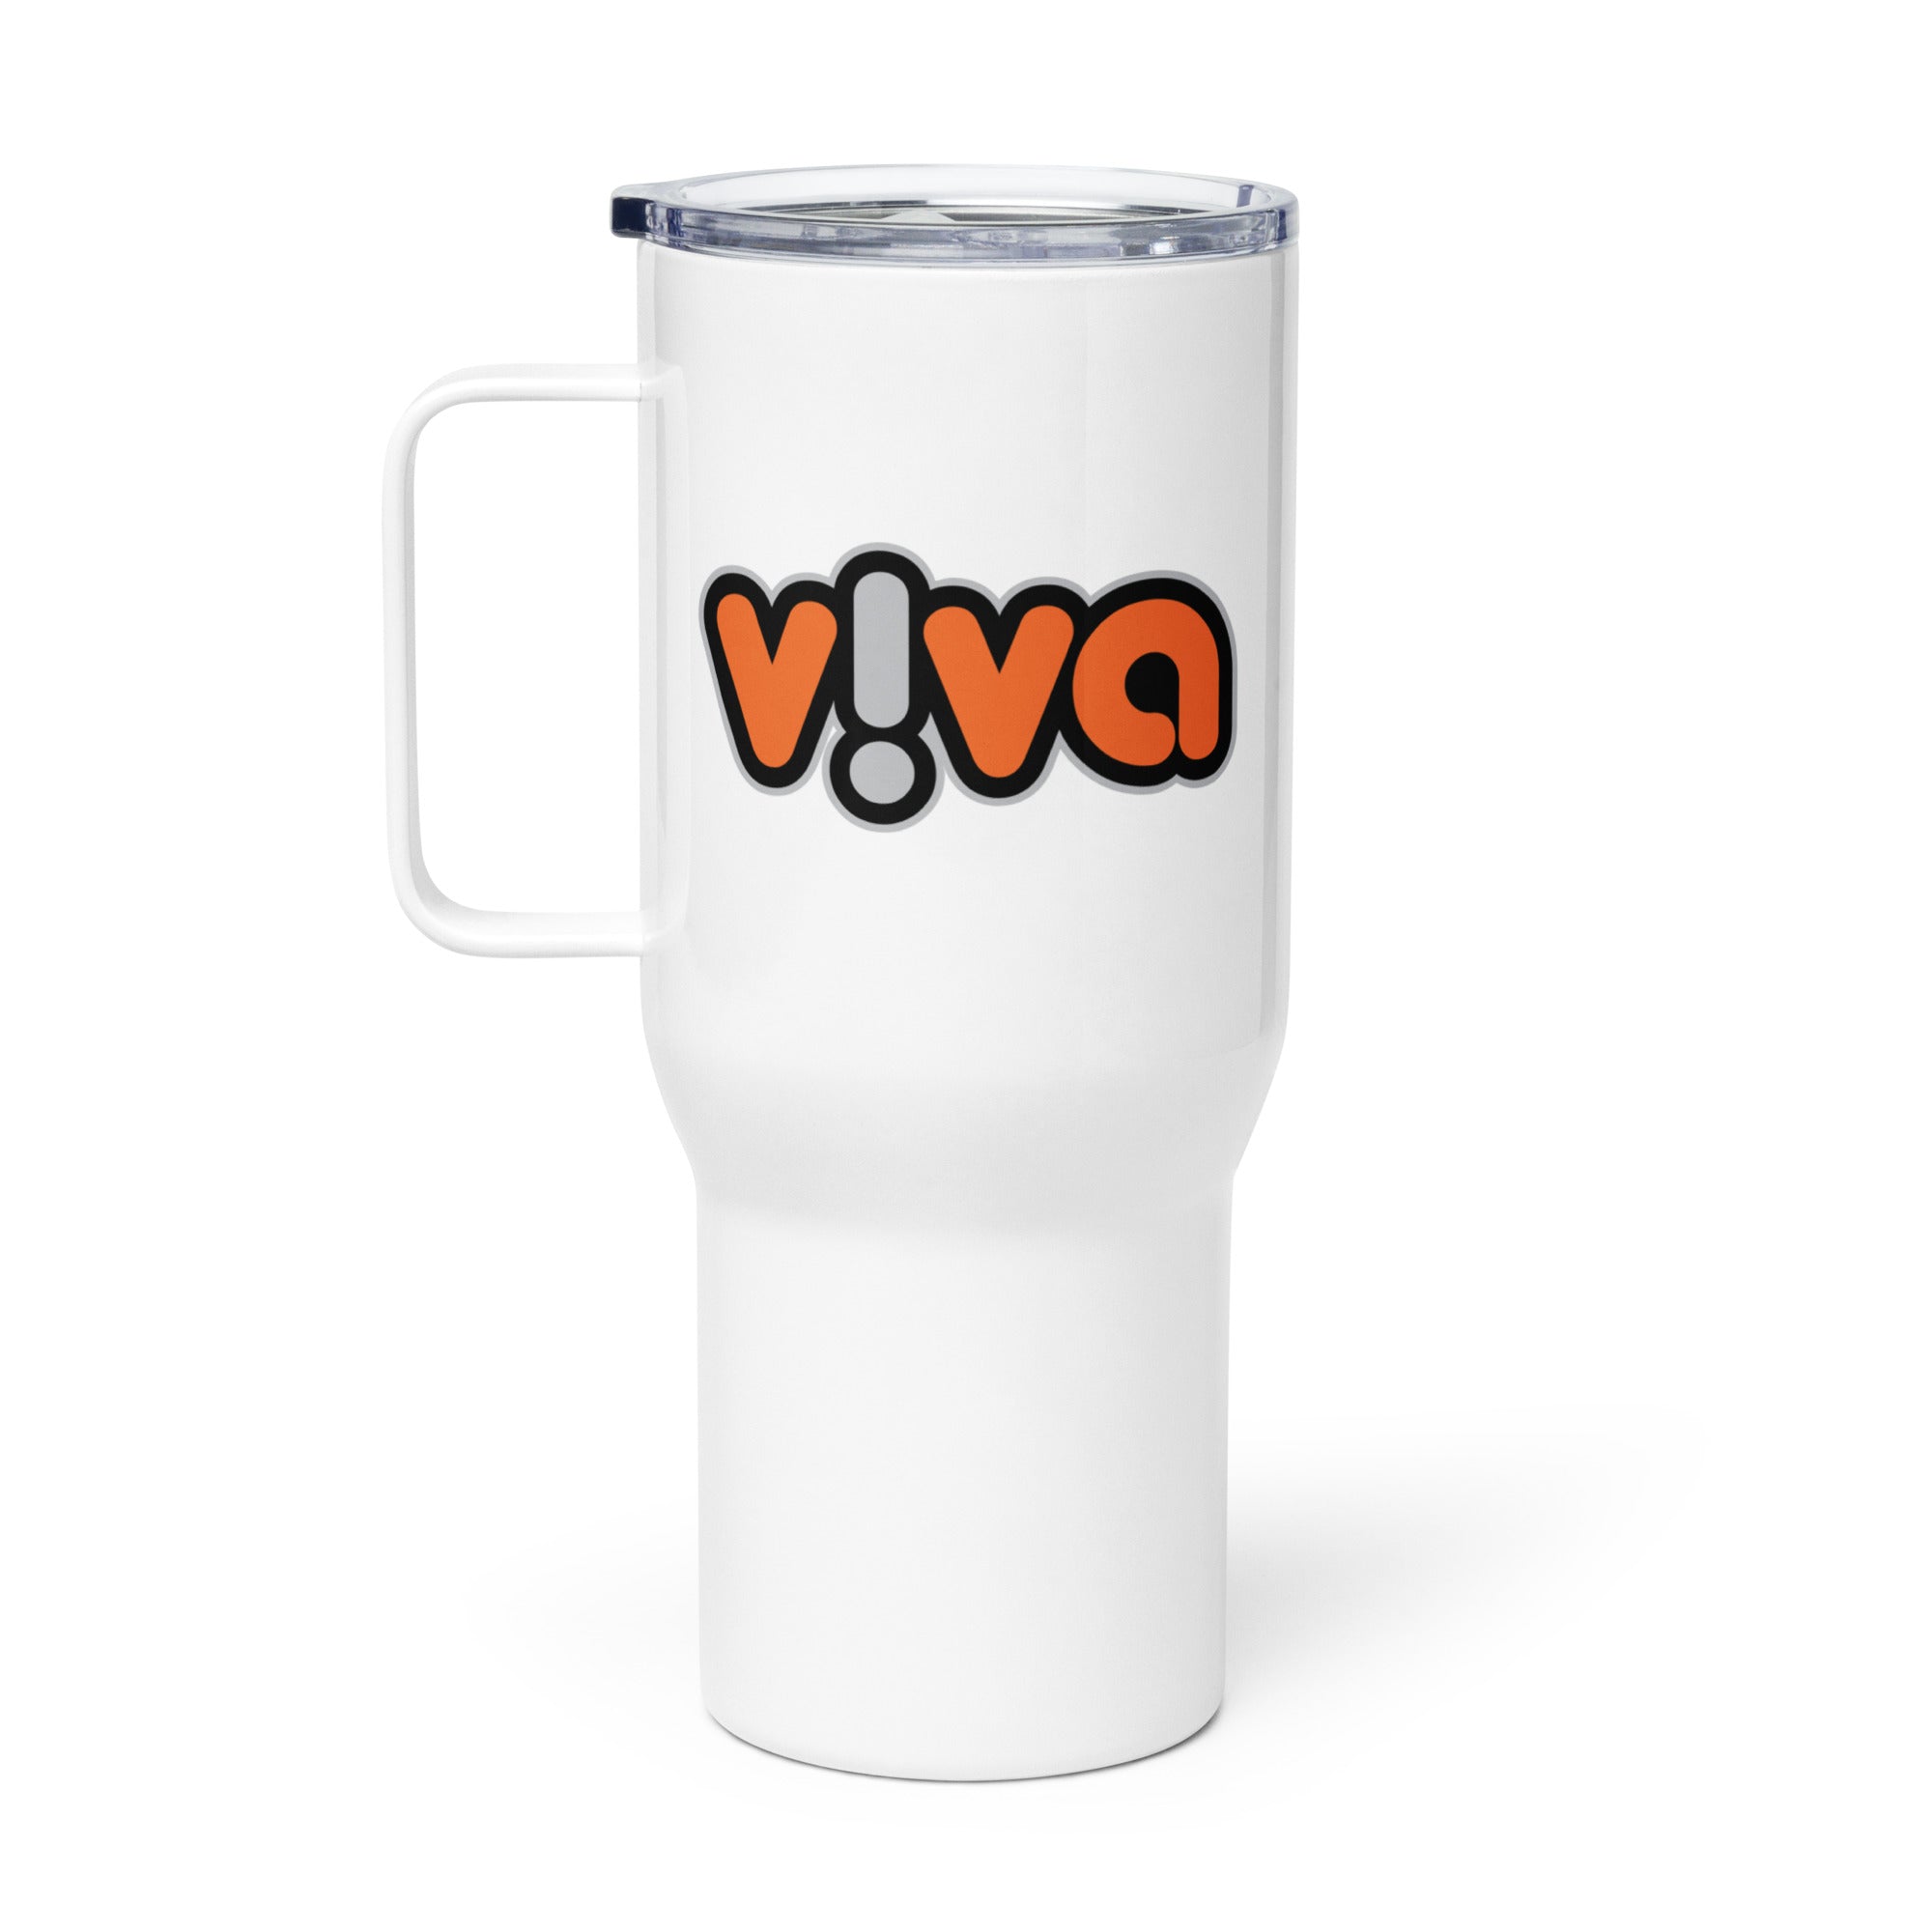 Viva: Travel Mug